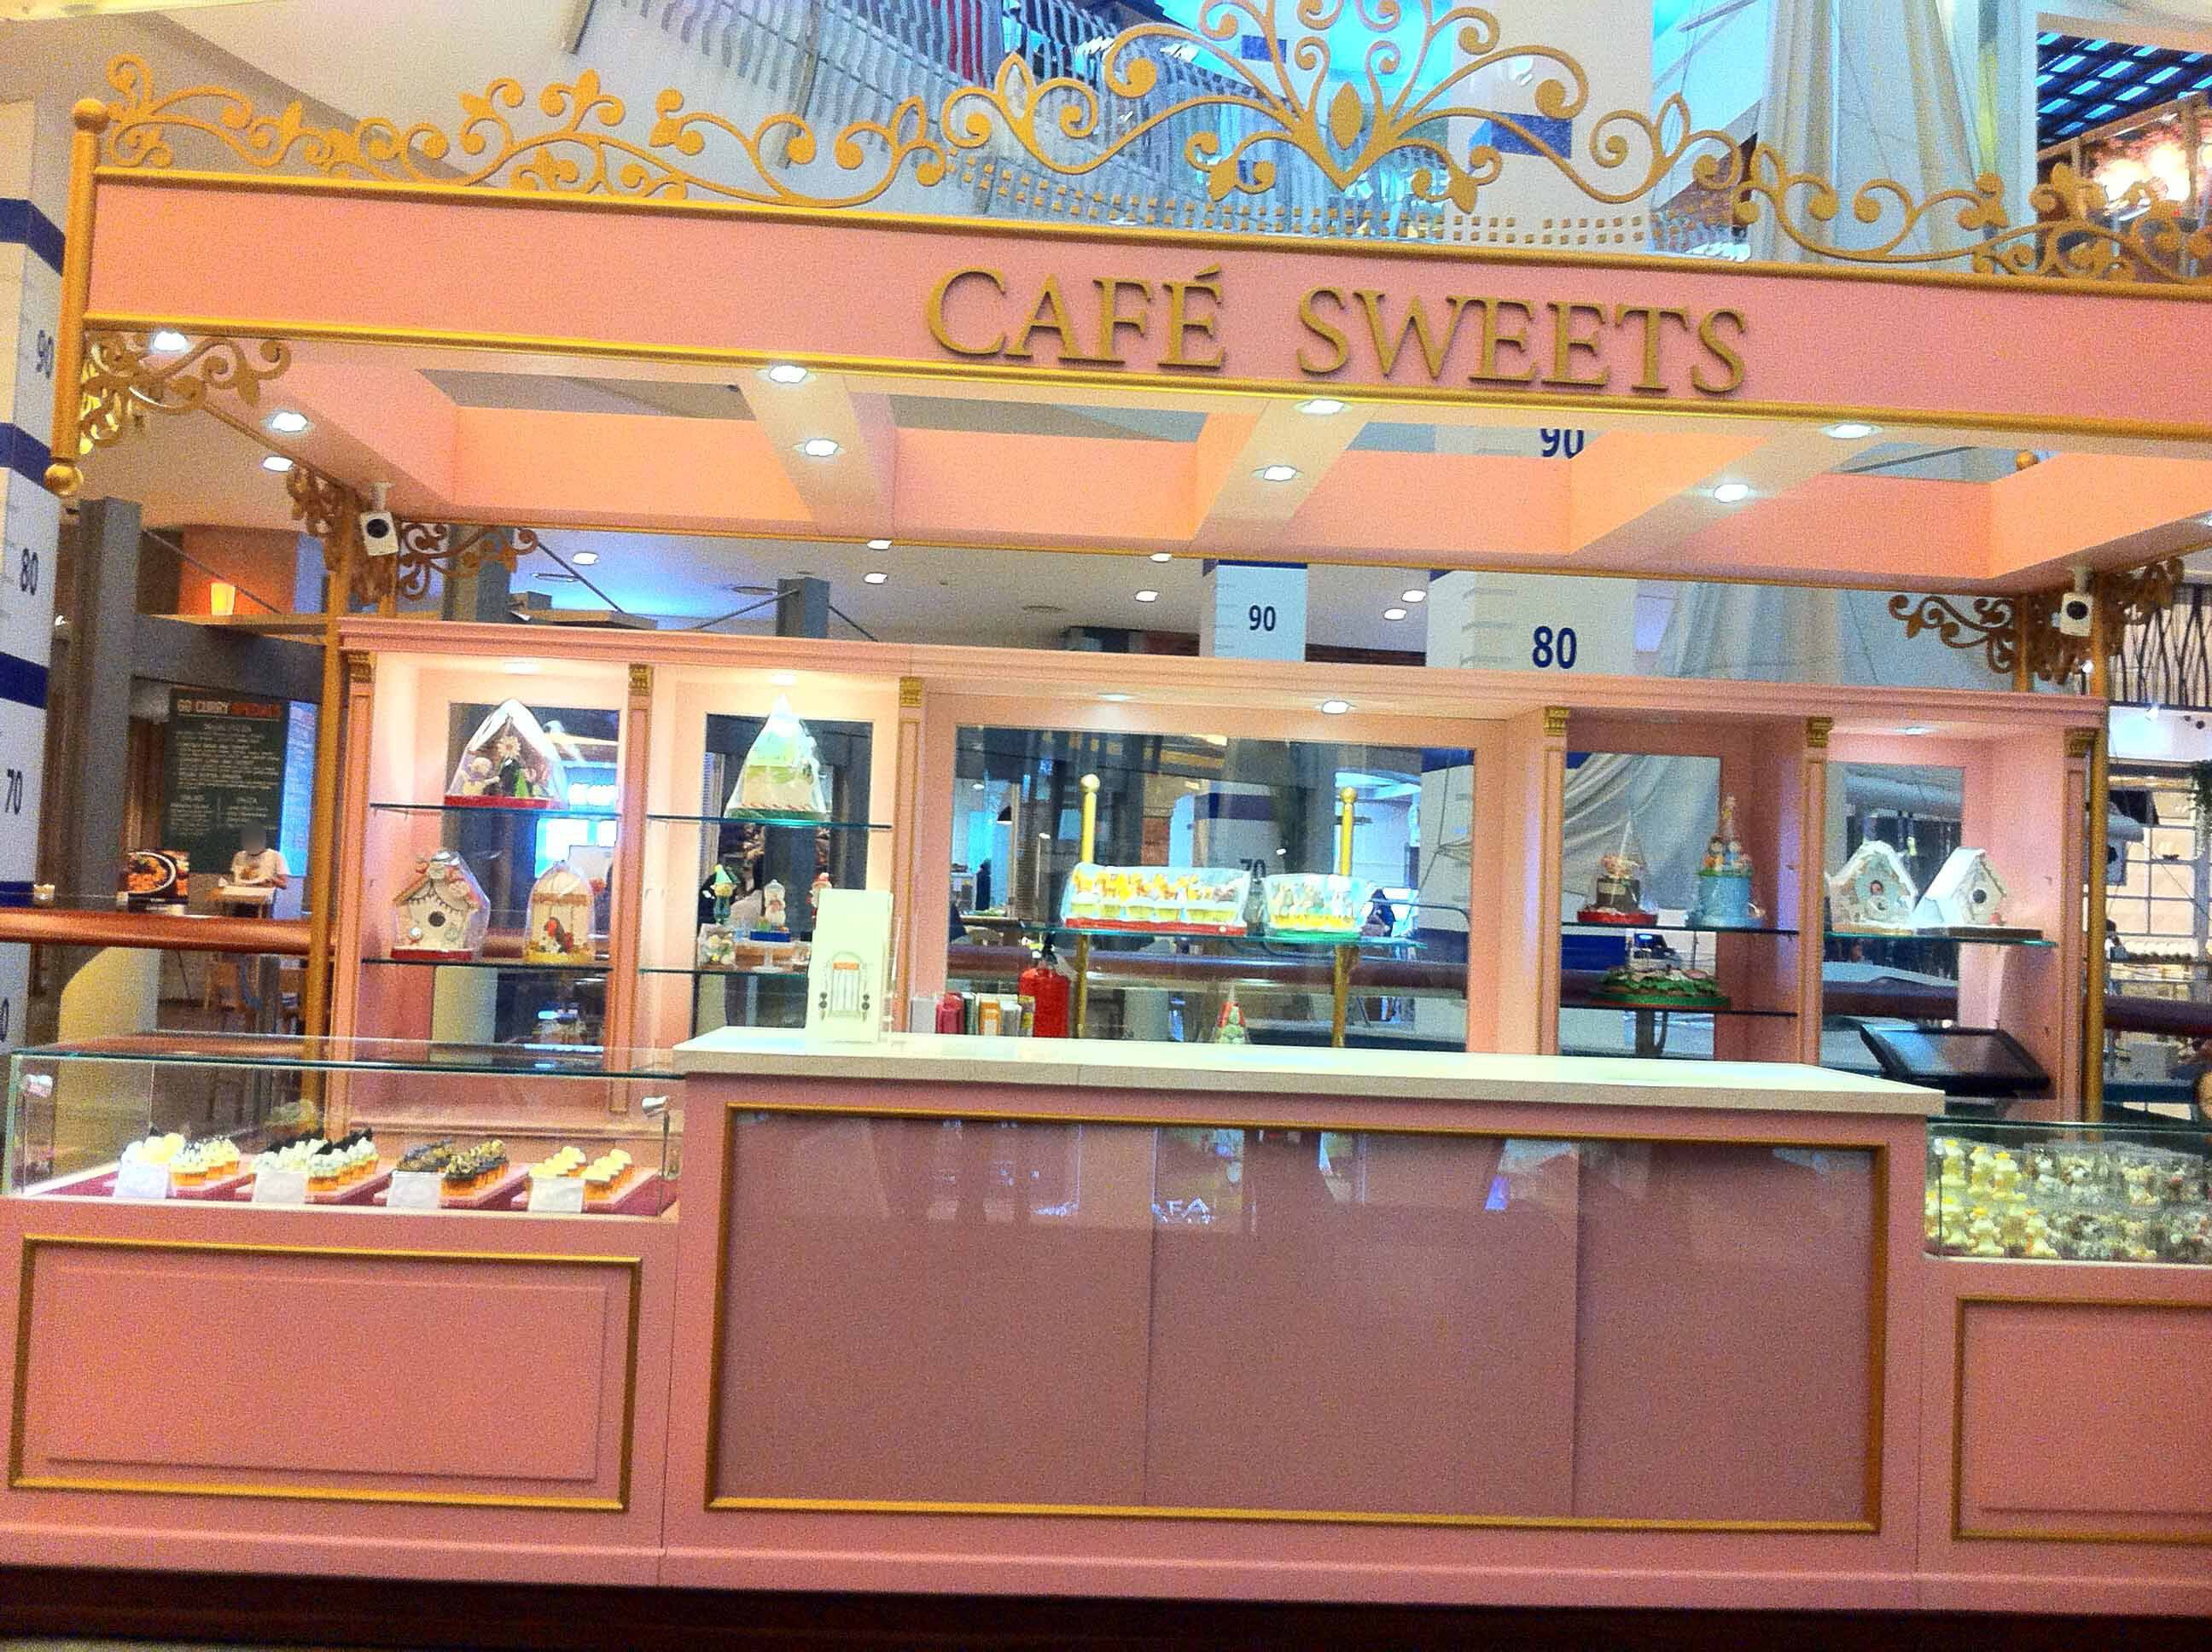 Cafe Sweets Menu Menu For Cafe Sweets Scbd Jakarta